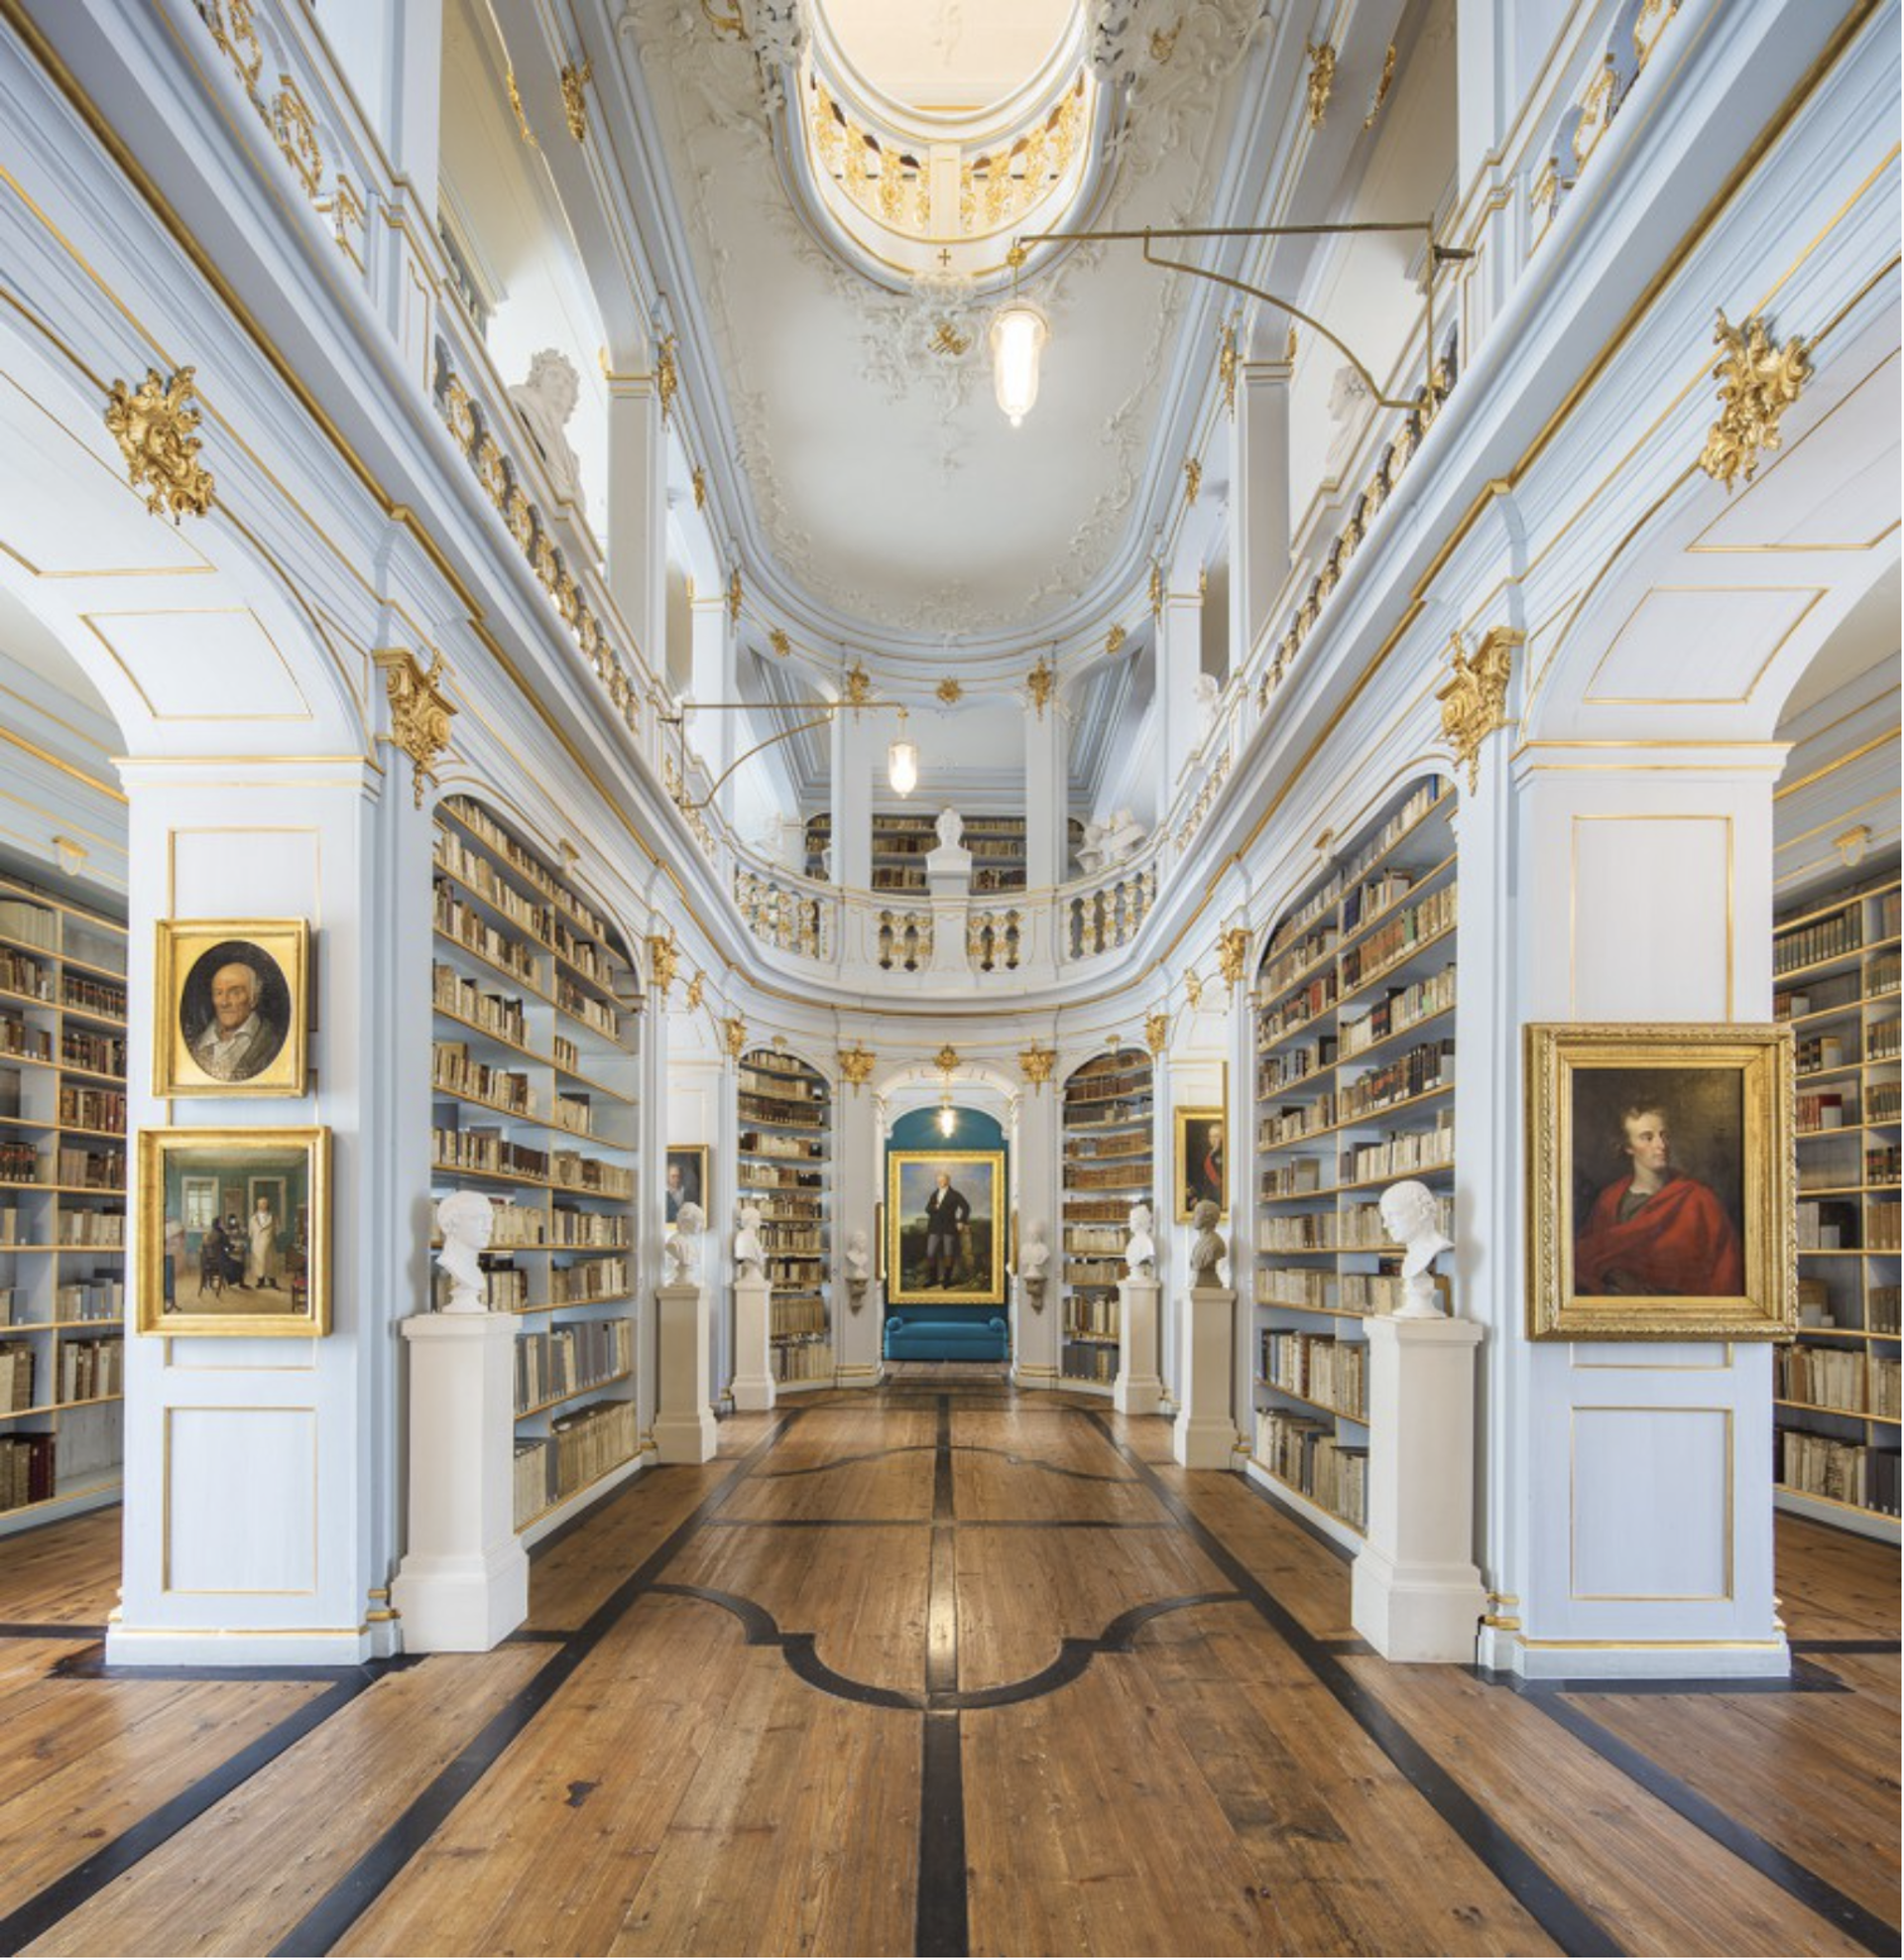 Duchess-Anna-Amalia-Library, Weimar, Germany by Reinhard Gorner